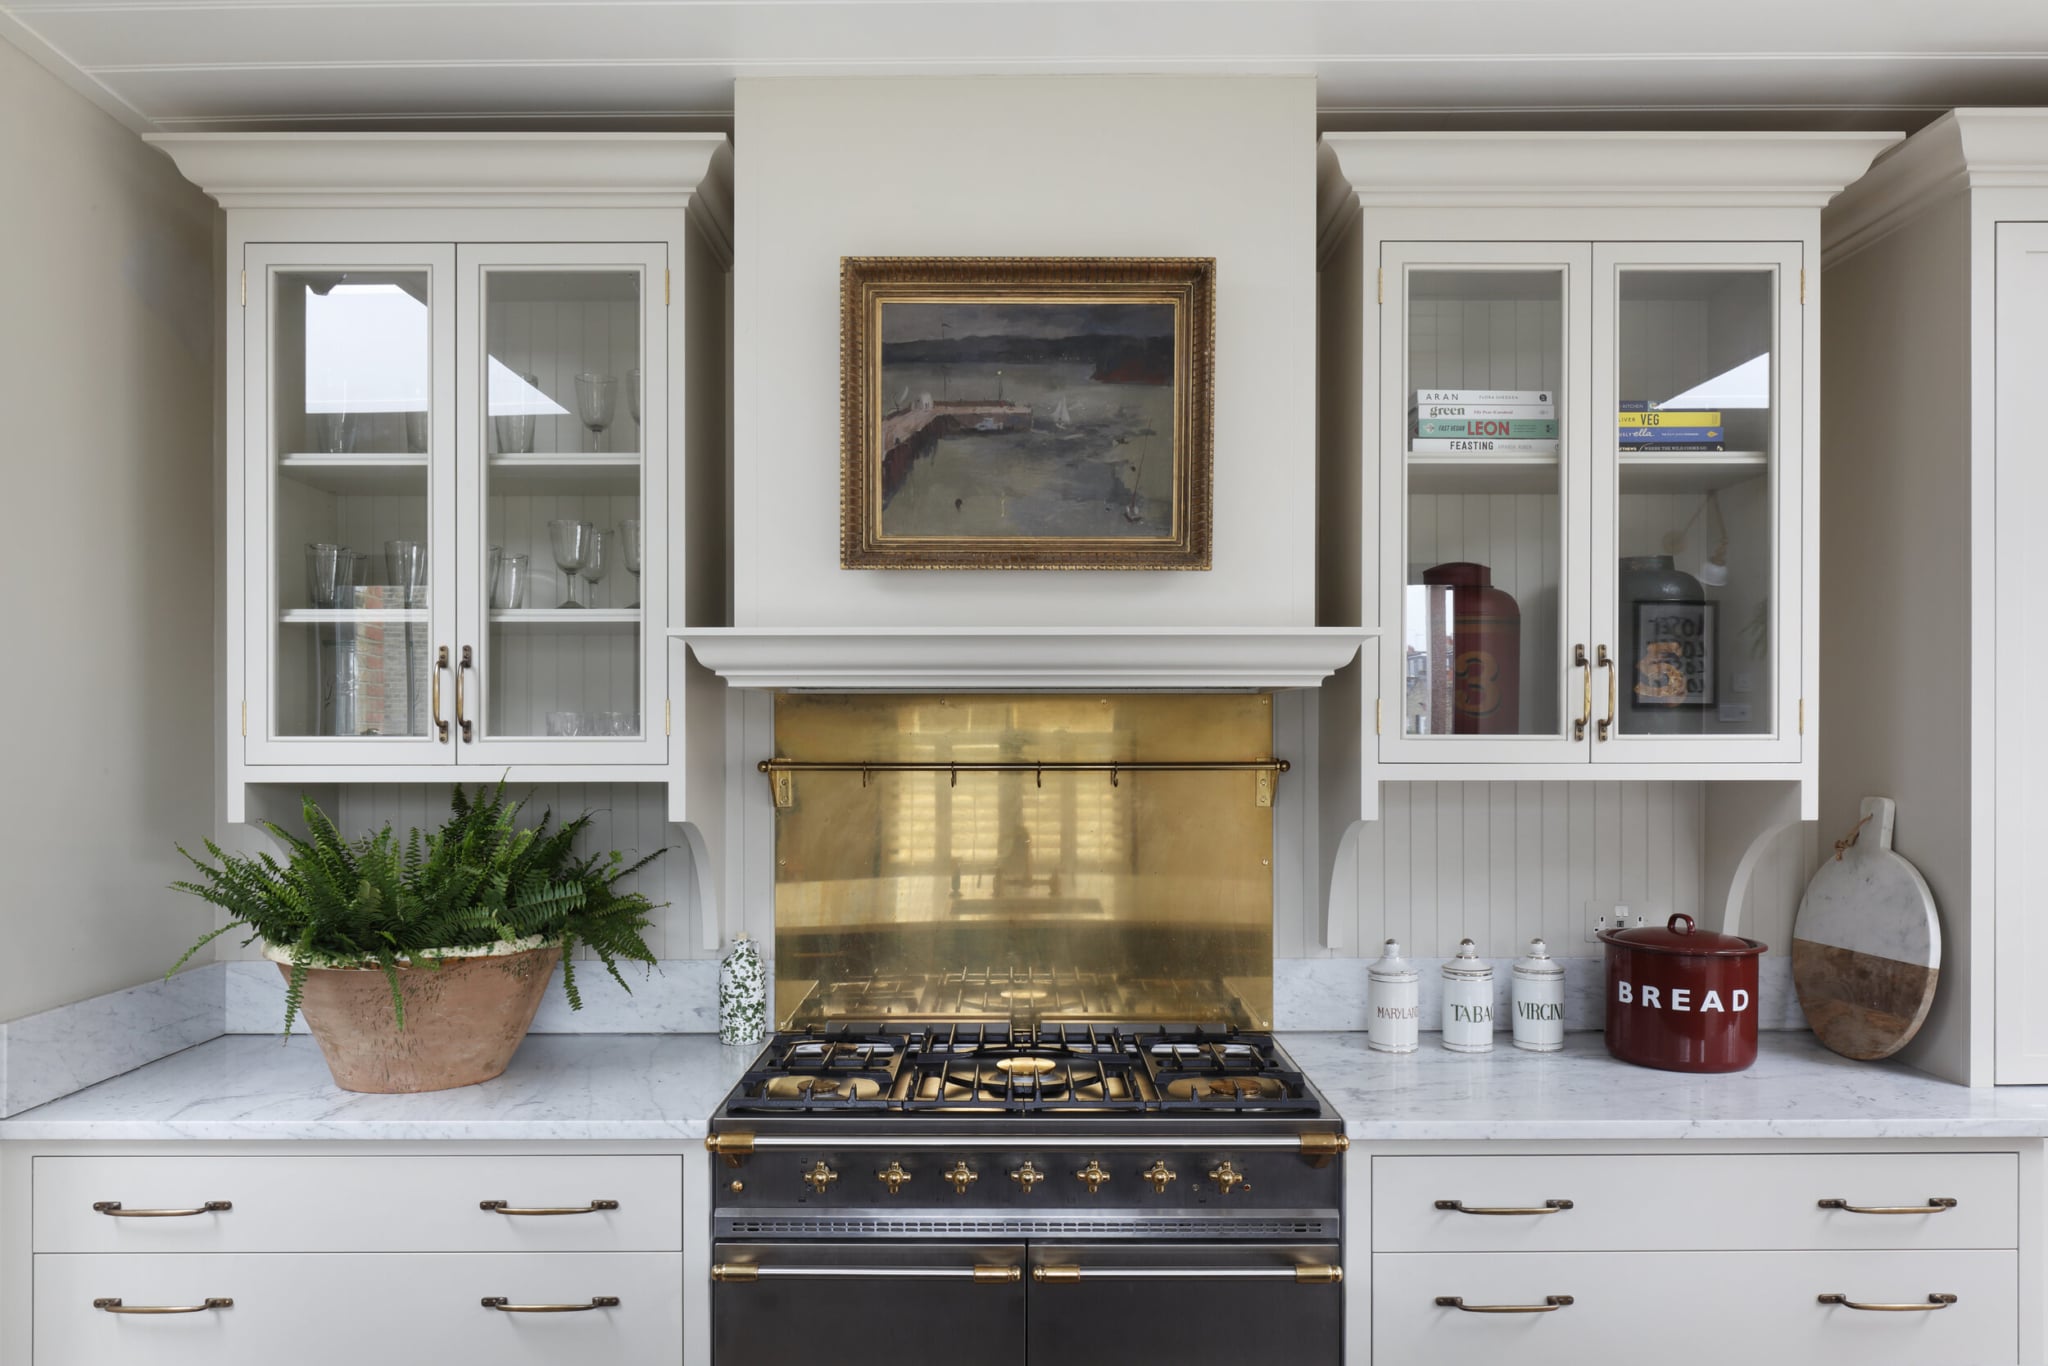 HÁM INTERIORS - kitchen - kitchen remodel - kitchen inspo - kitchen inspiration - kitchen design - kitchen decor -London designer